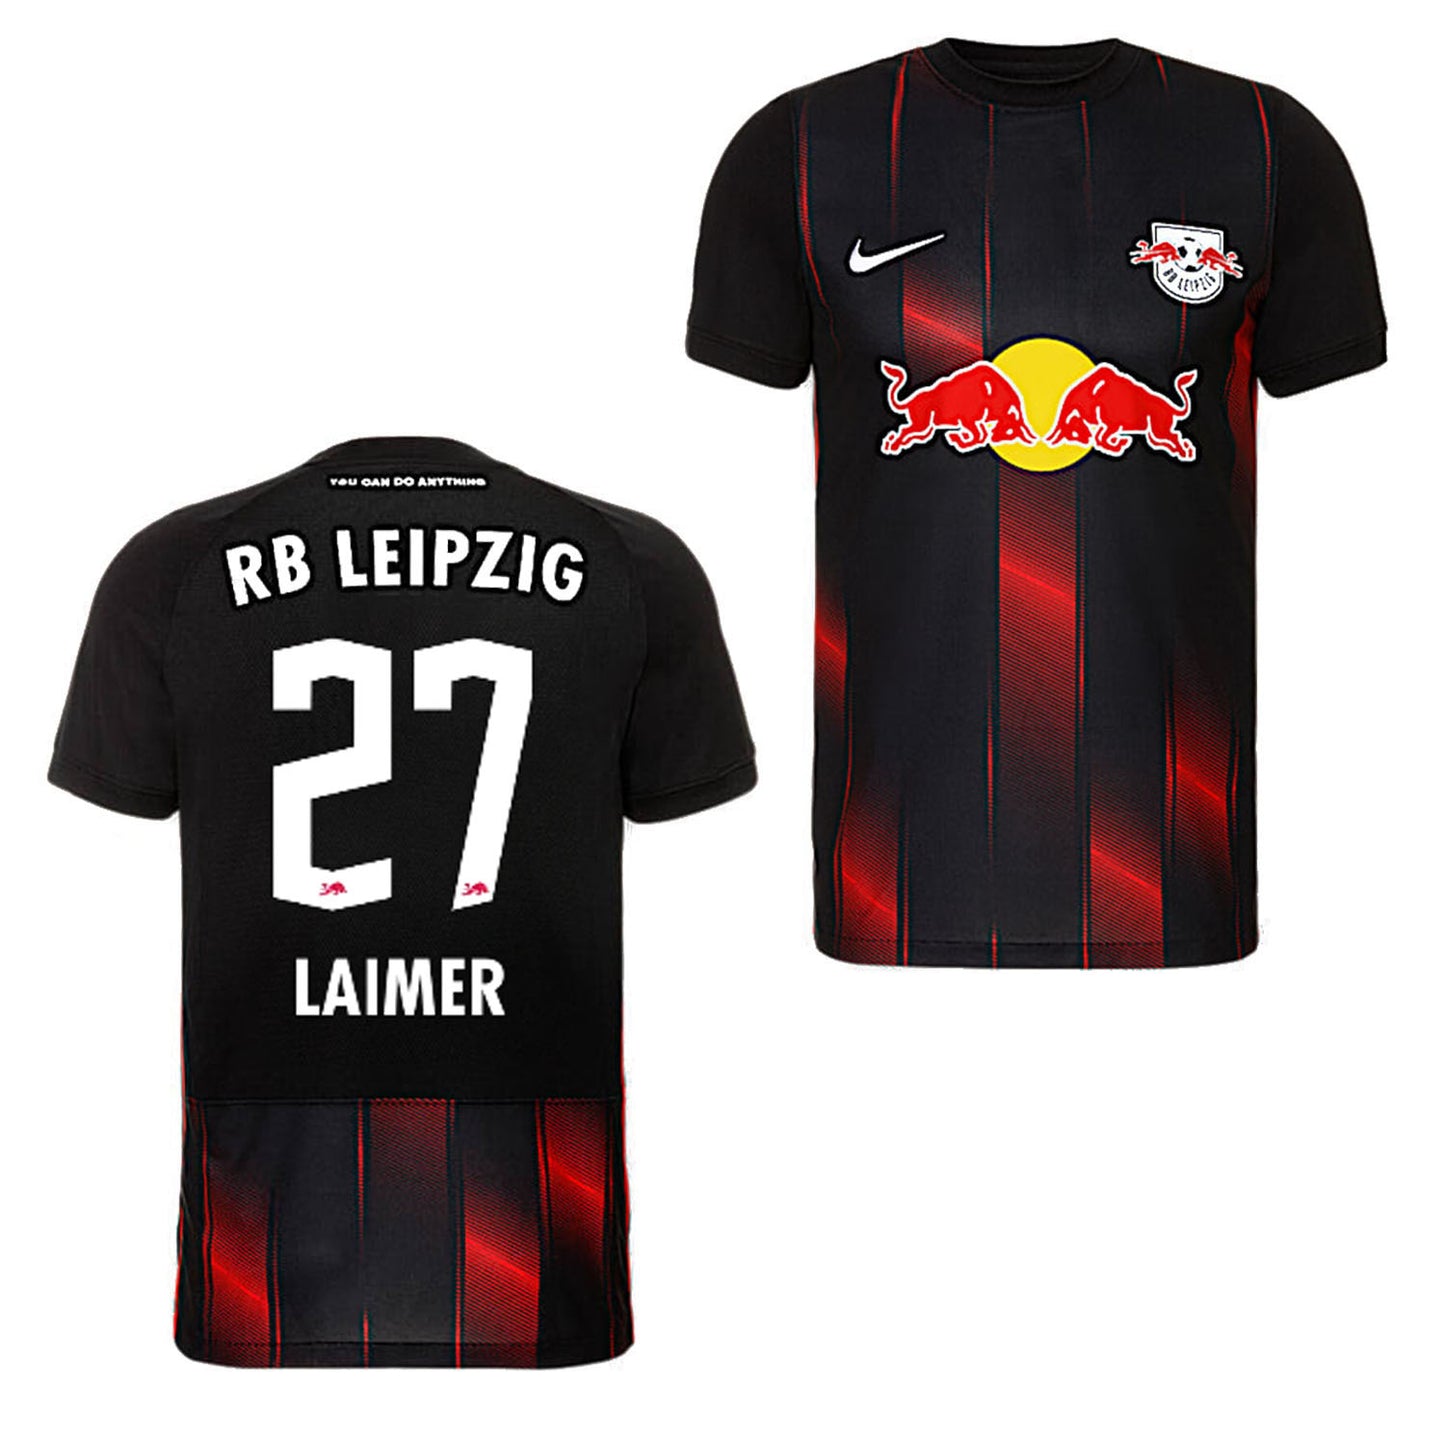 Konrad Laimer RB Leipzig 27 Jersey